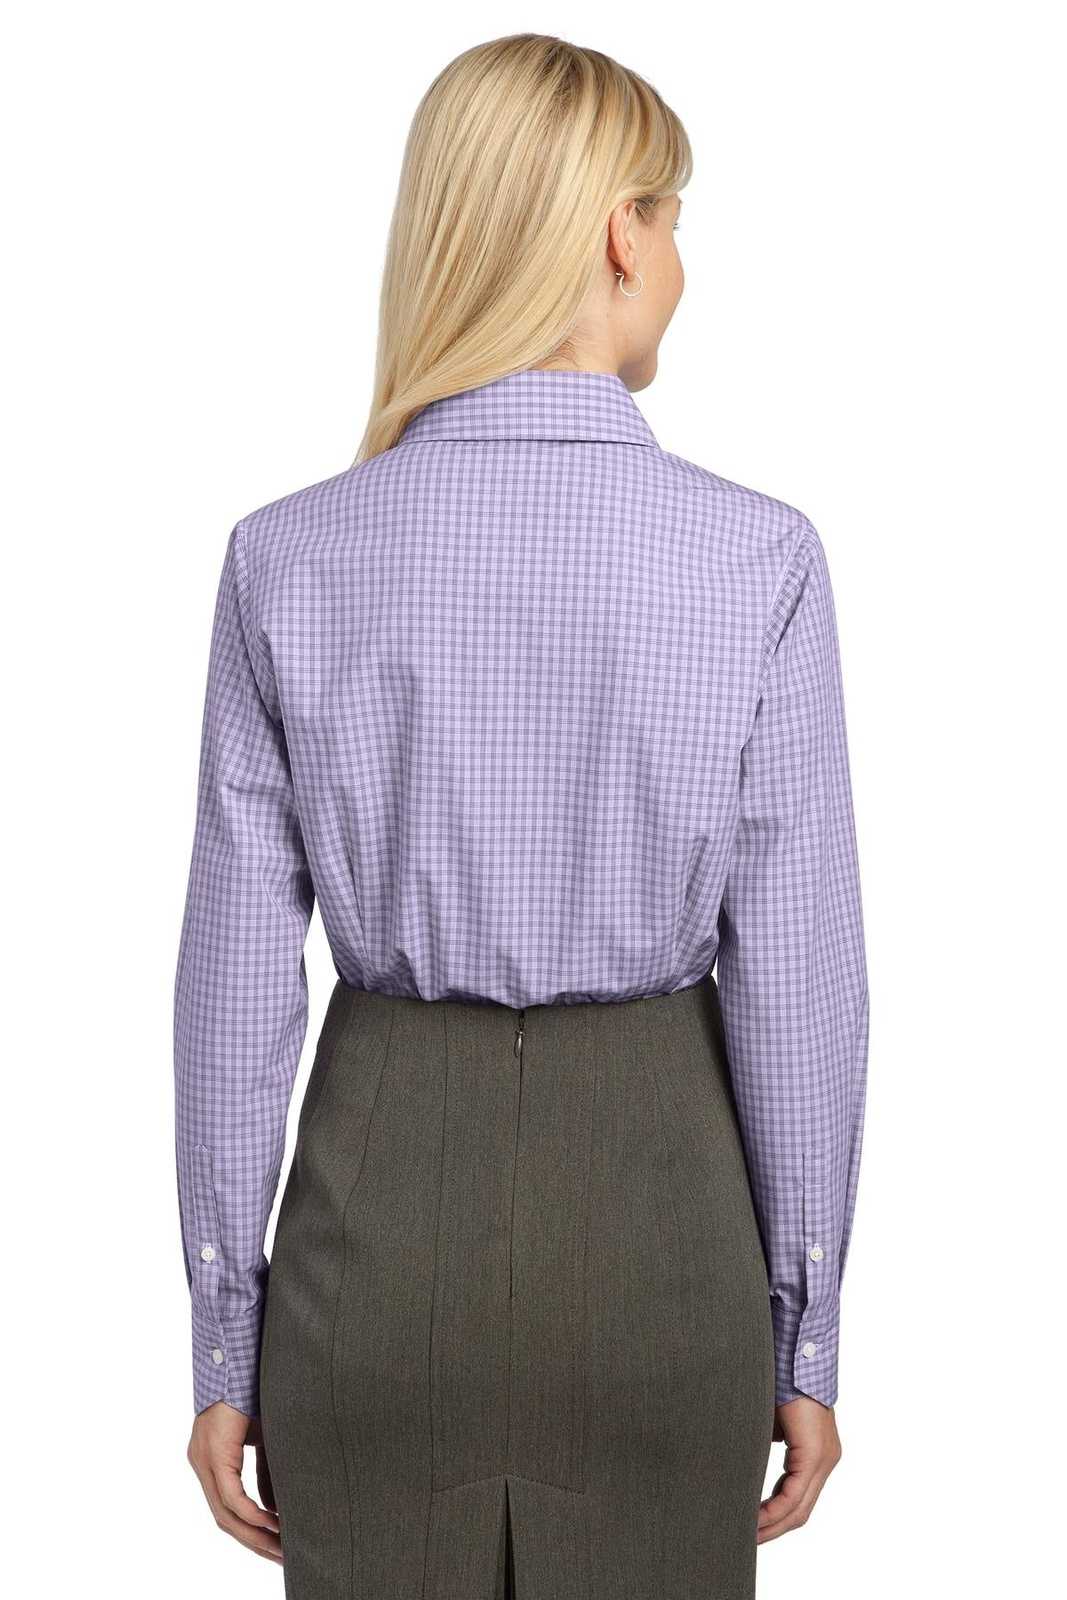 Port Authority L639 Ladies Plaid Pattern Easy Care Shirt - Purple - HIT a Double - 2